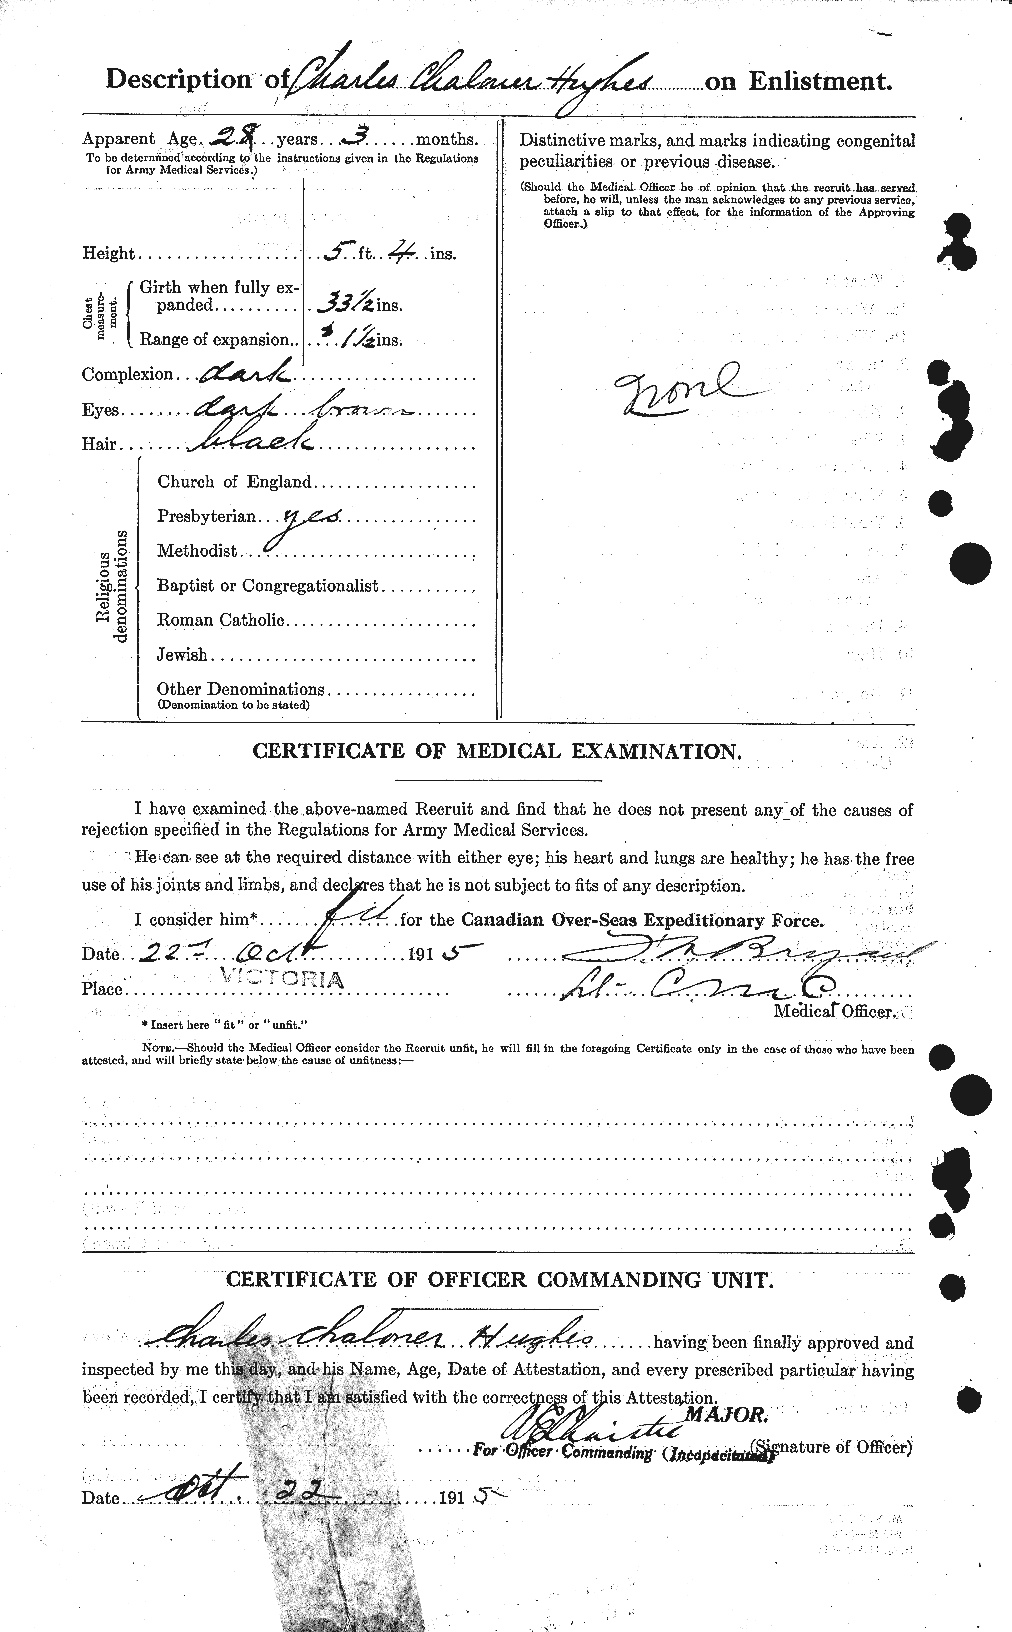 Dossiers du Personnel de la Première Guerre mondiale - CEC 402603b